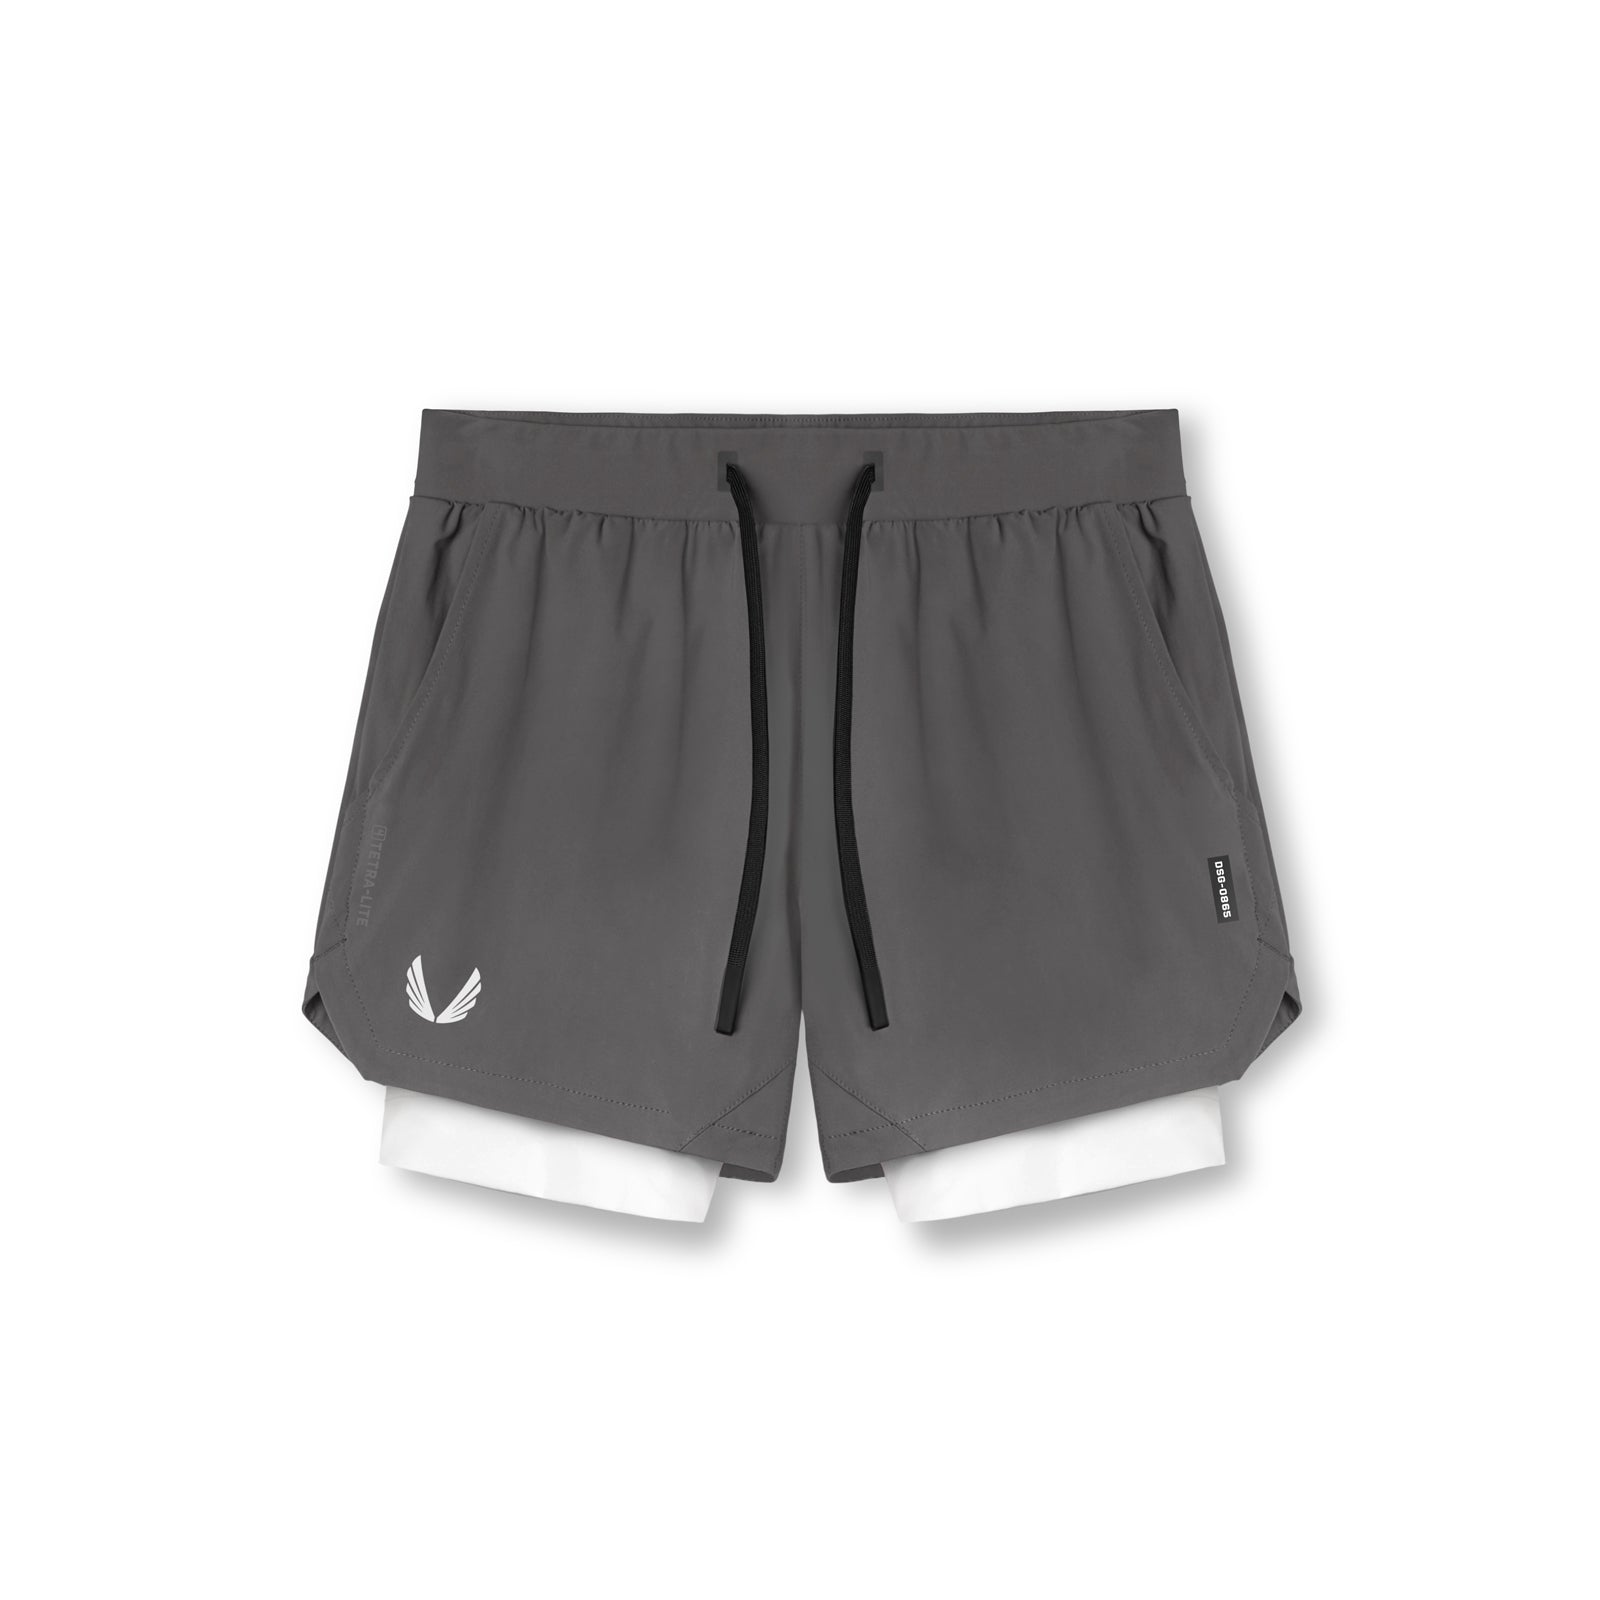 Tetra-Lite™ 5” Liner Shorts